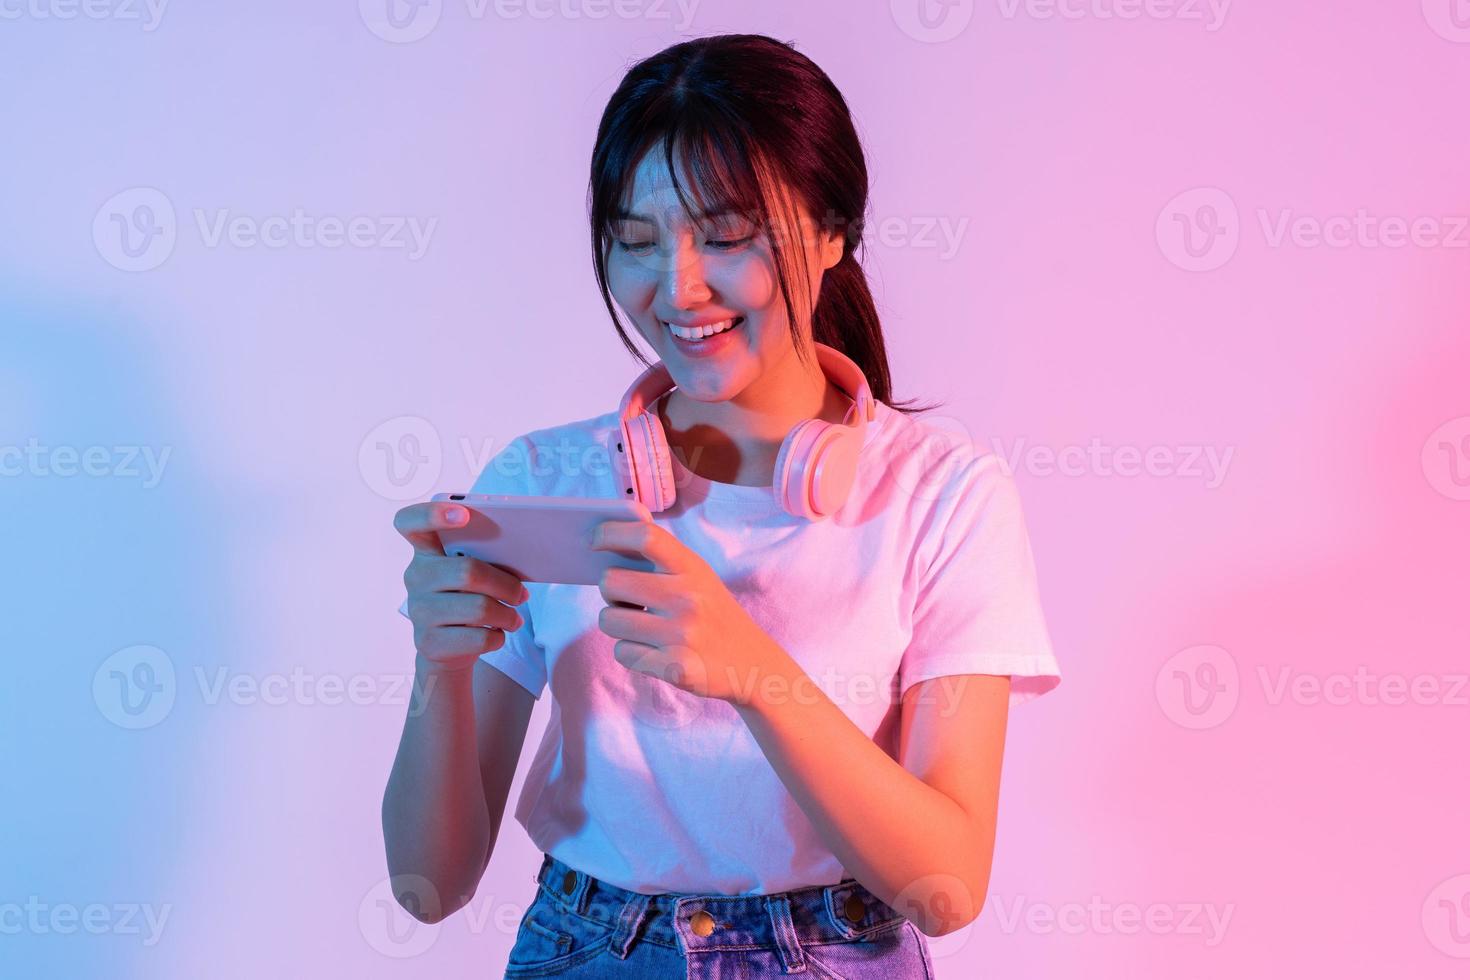 jeune fille asiatique jouant au téléphone avec enthousiasme photo